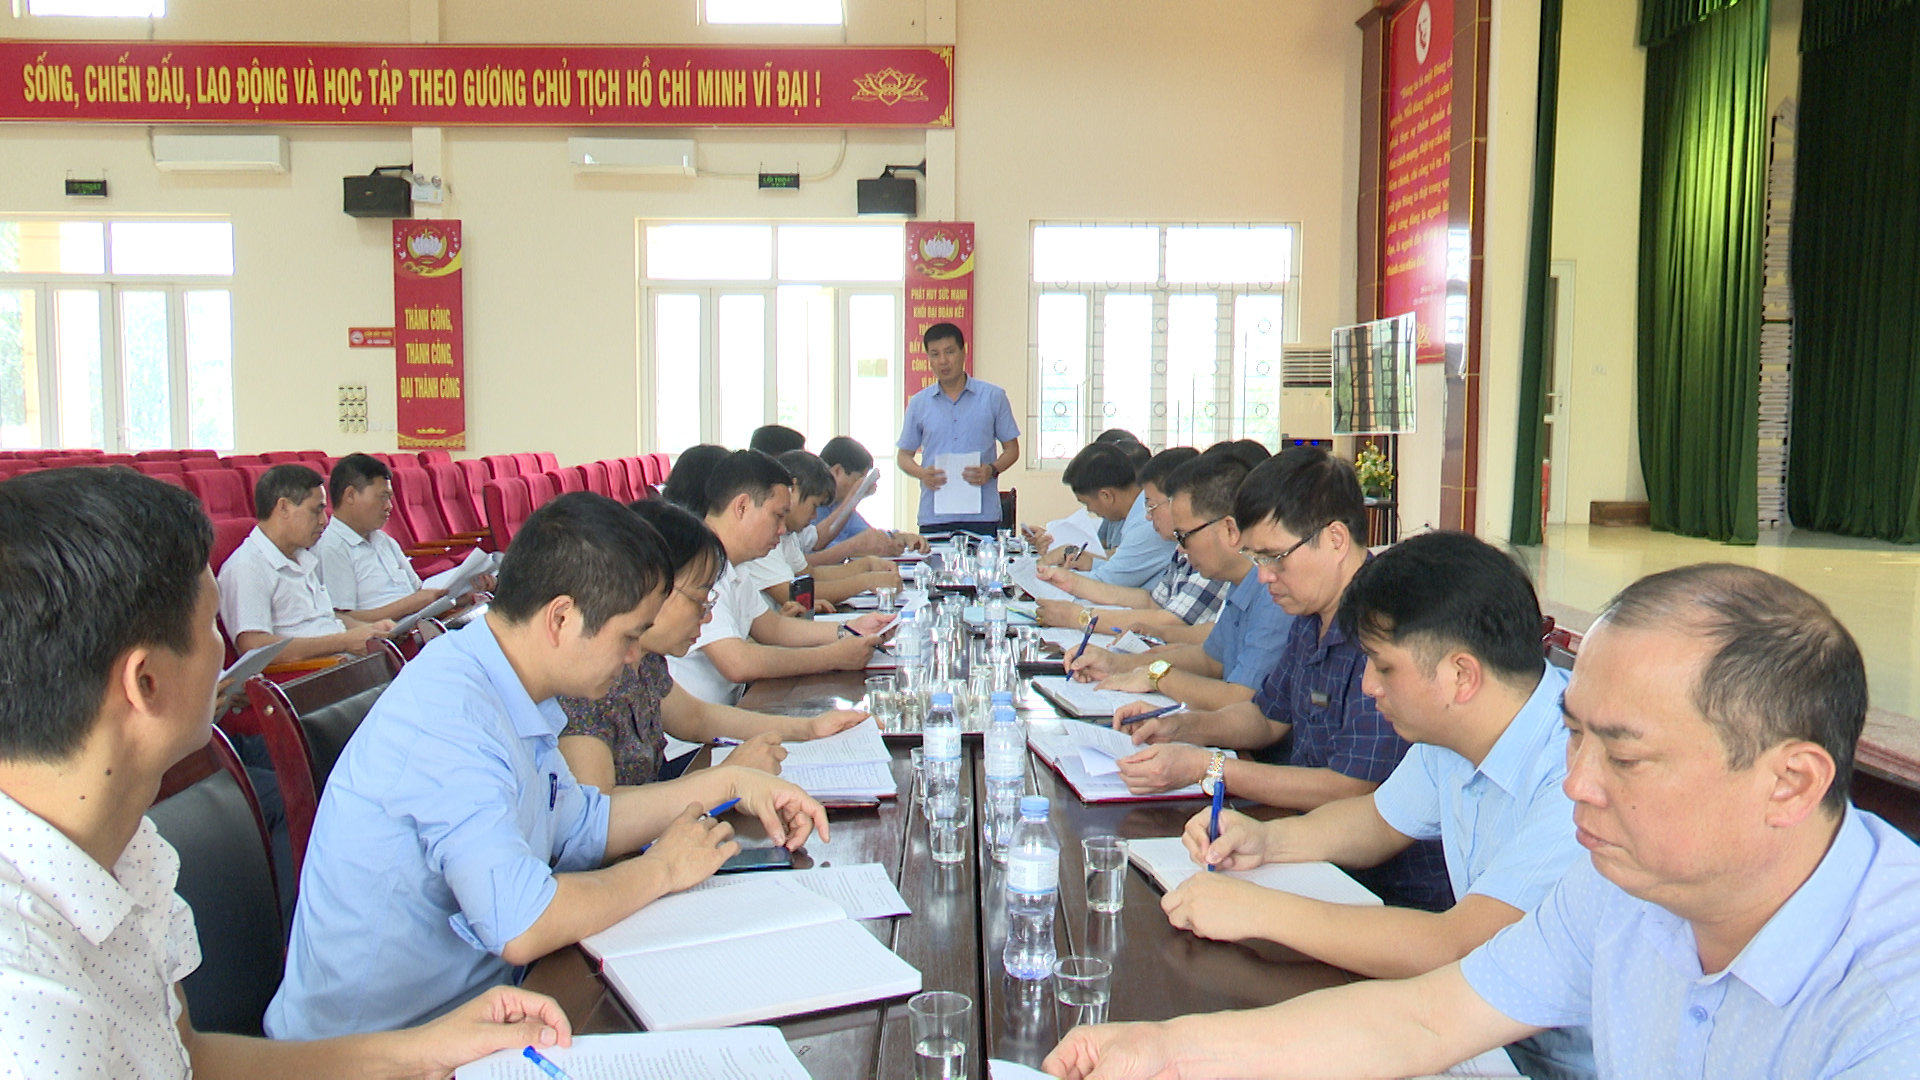 Đoàn công tác thành phố làm việc tại phường Tân Hồng tìm giải pháp triển khai thực hiện kết luận số 739, 740 của BTV tỉnh ủy